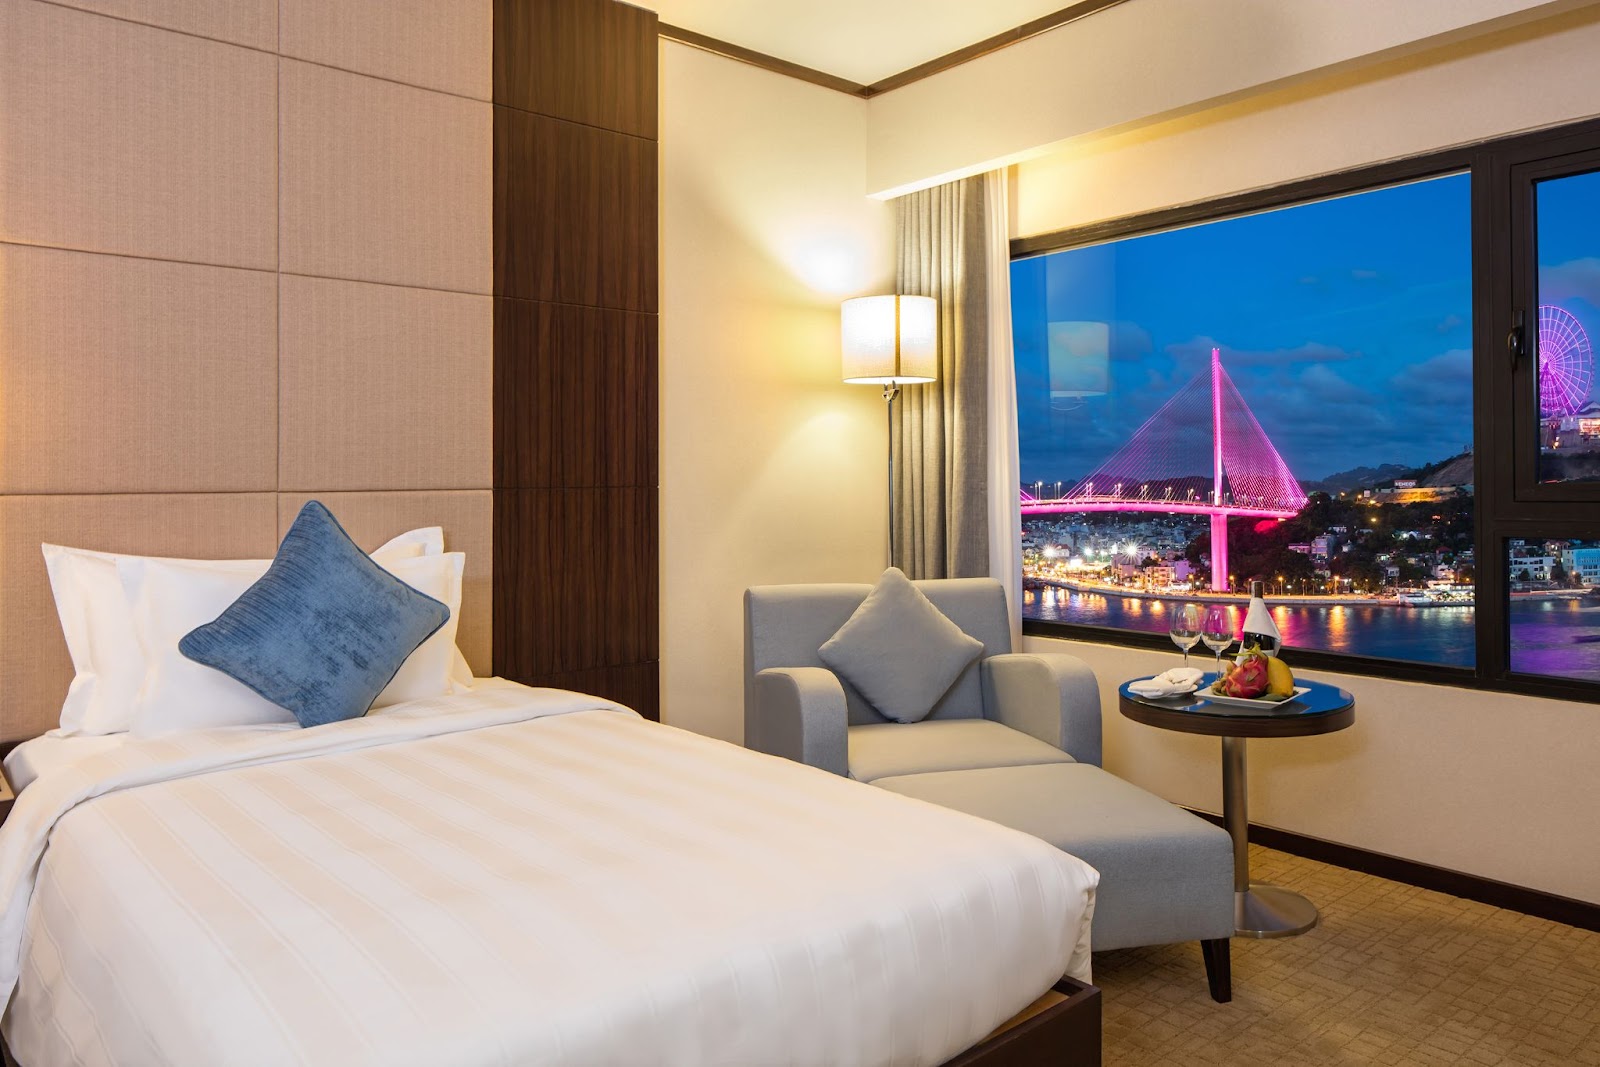 Du lịch Hạ Long cuối năm tại khách sạn 5 sao Wyndham Legend Ha Long - Wyndham Legend Ha Long - lựa chọn lý tưởng cho kỳ nghỉ cuối năm - Đa dạng lựa chọn phòng nghỉ cao cấp